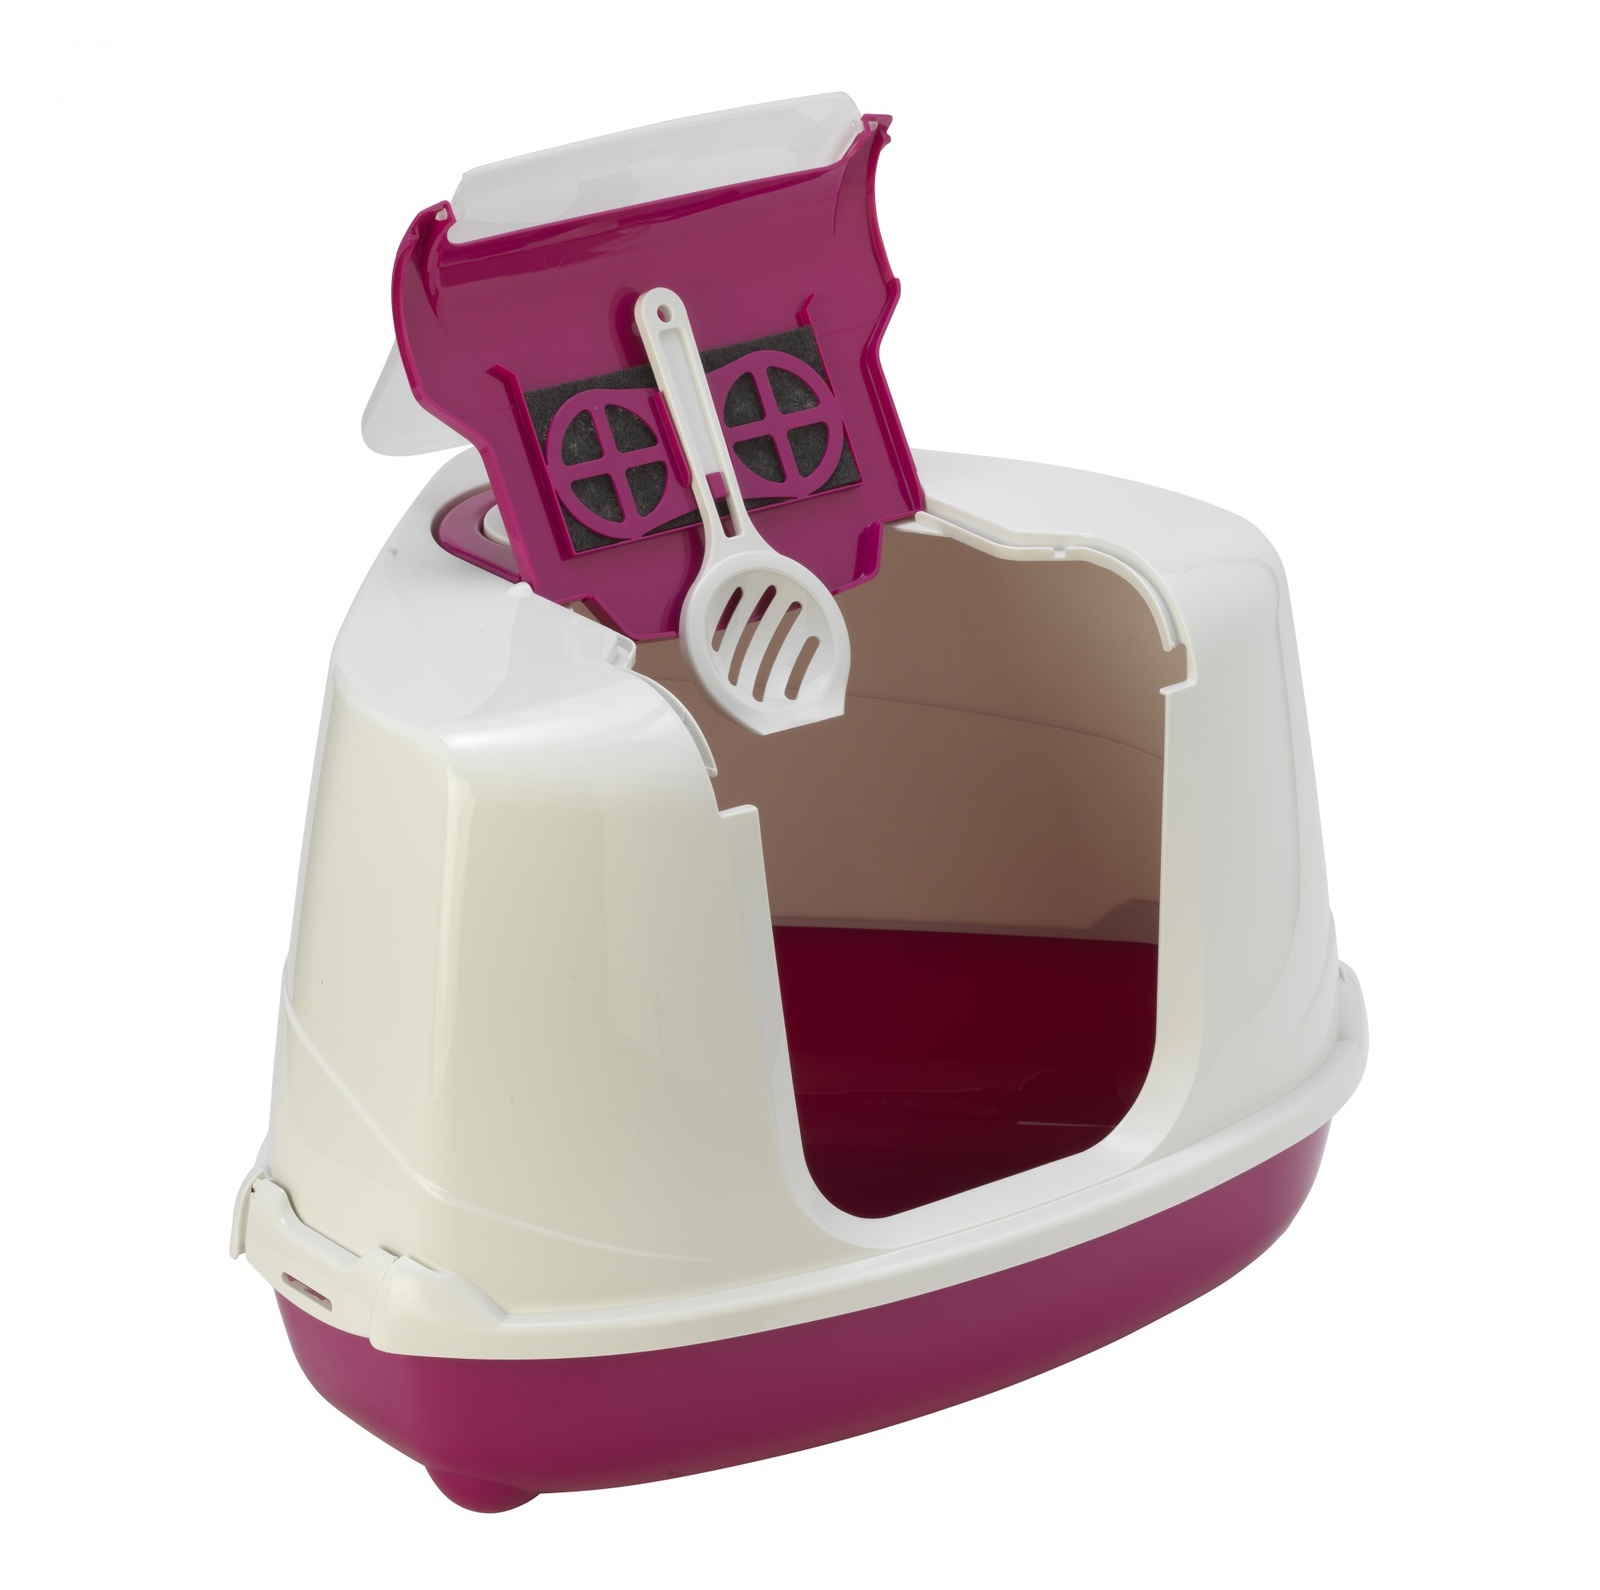 Moderna Moderna туалет-домик угловой Flip с угольным фильтром, 56X44X36 см, ярко-розовый (1,6 кг)